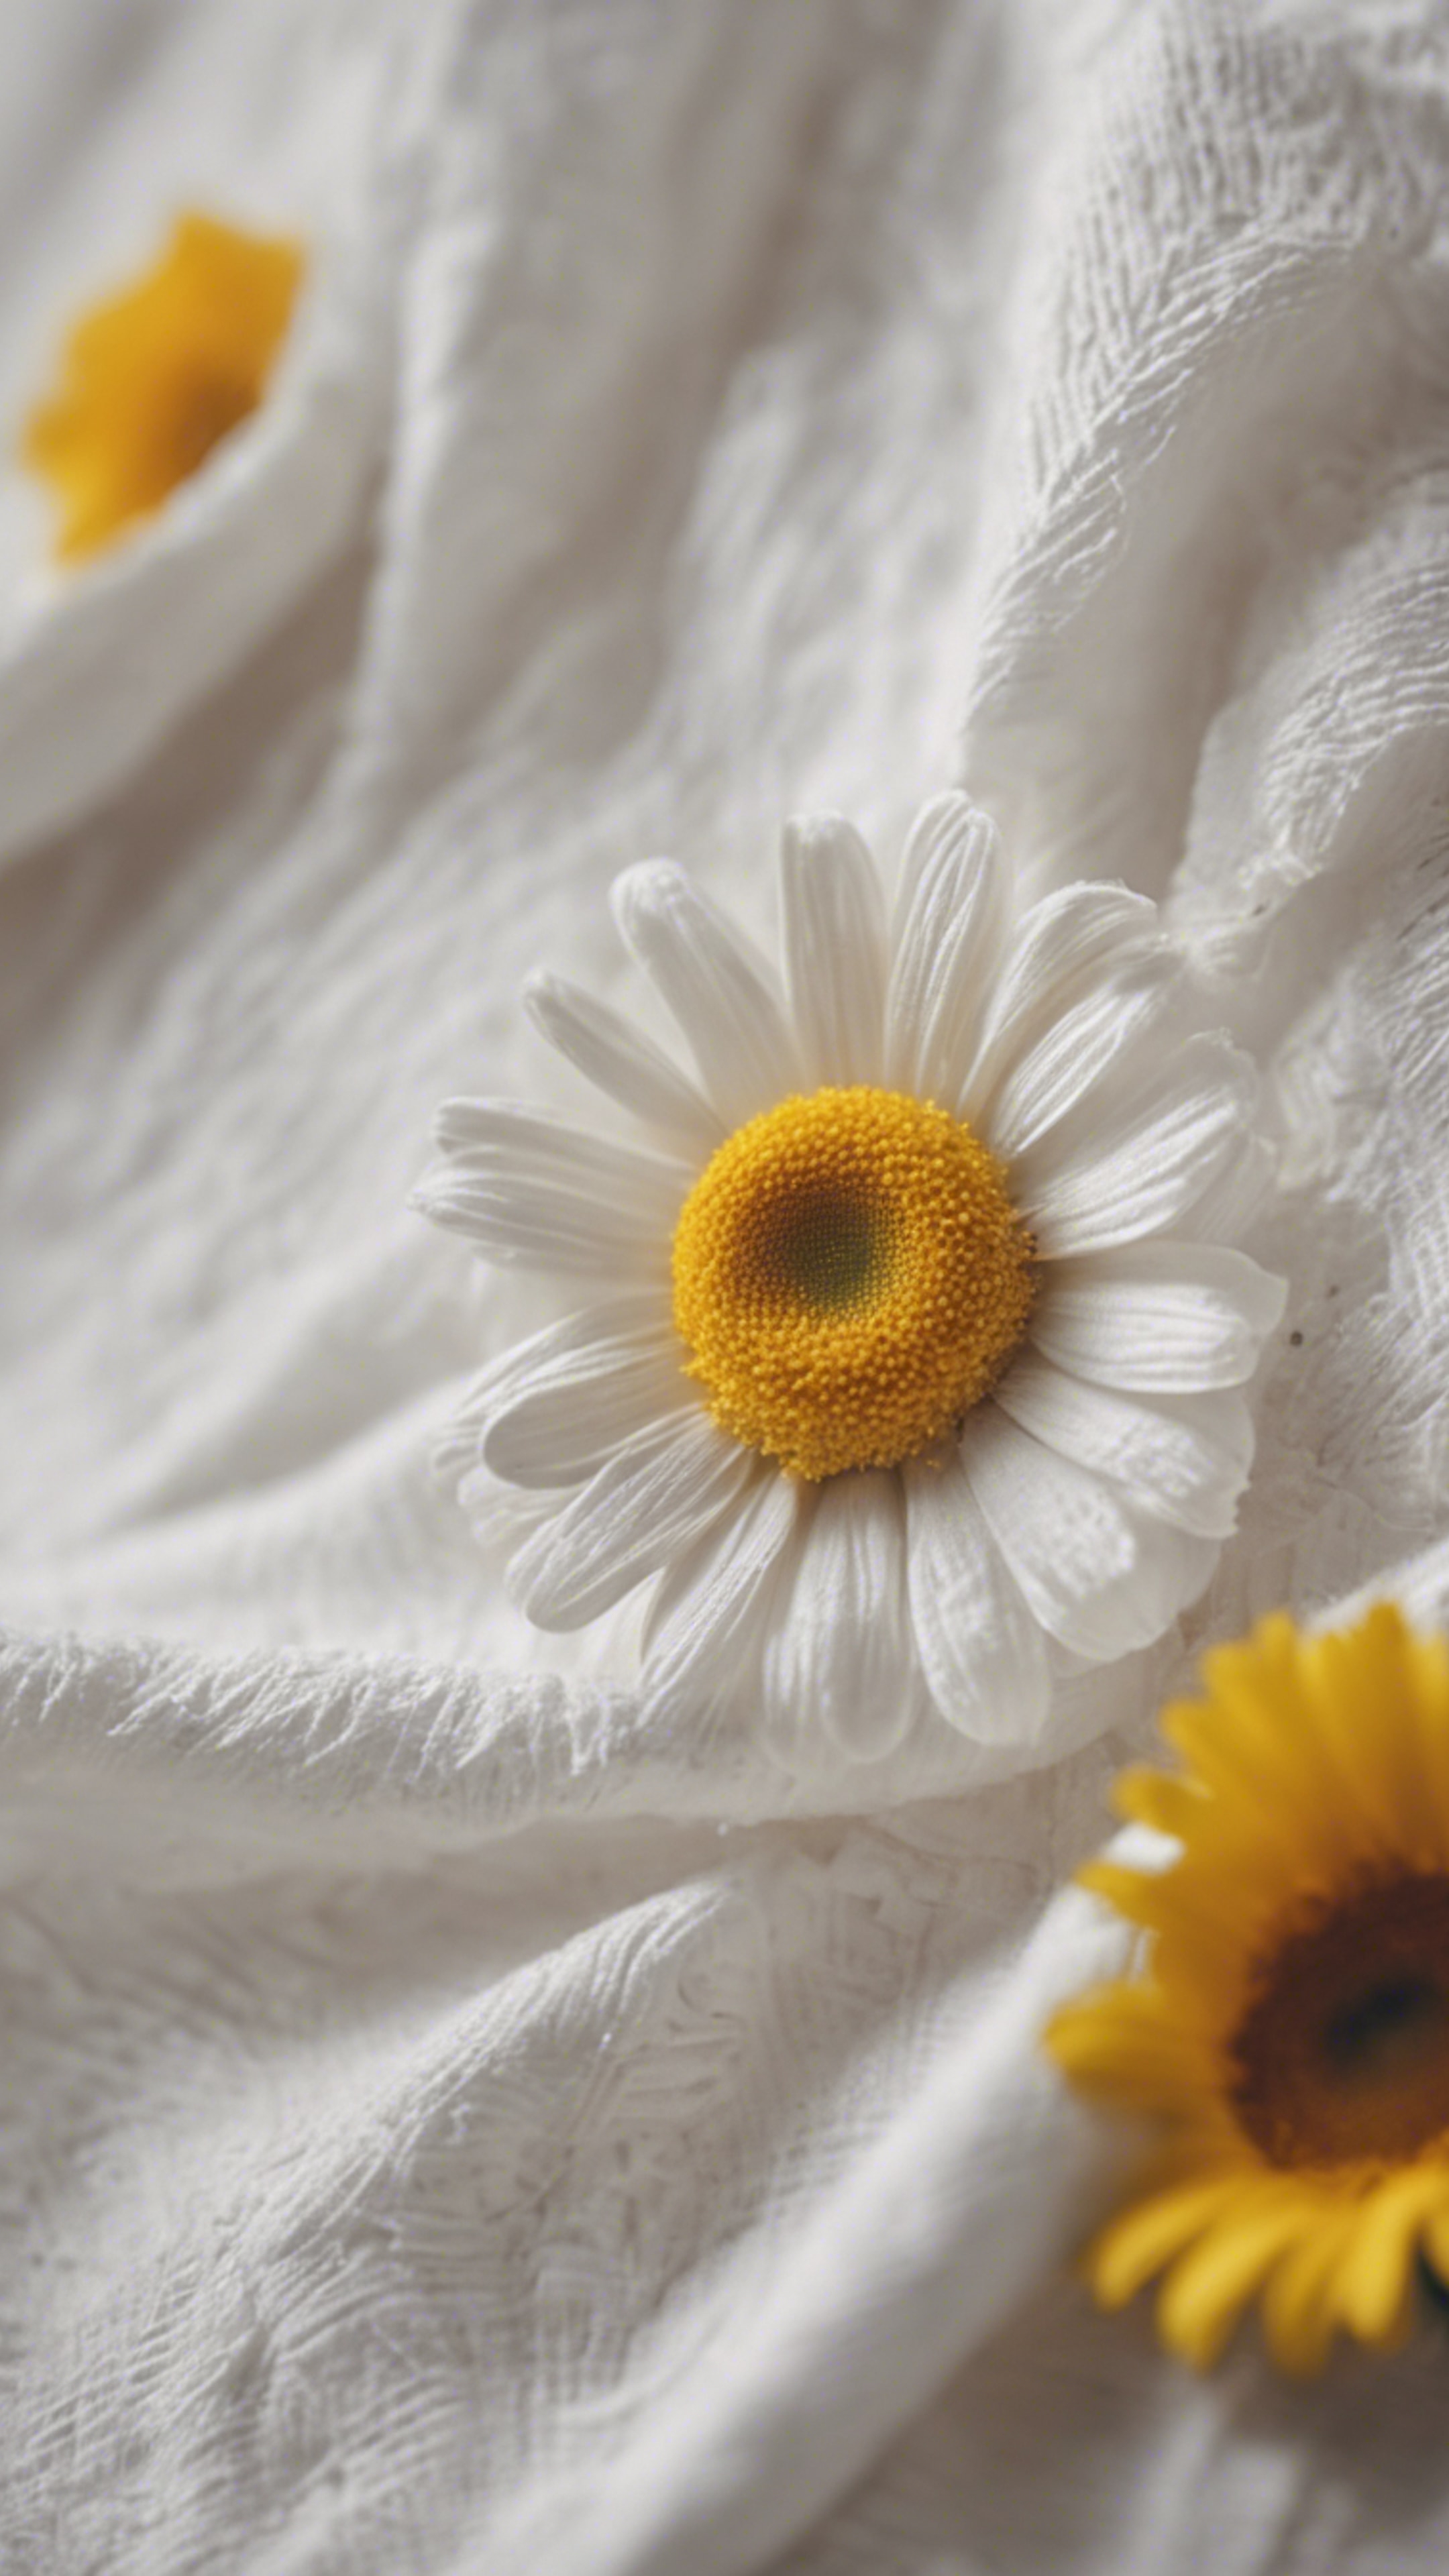 A white cotton dress with a daisy, featuring yellow petals and a white center. Fondo de pantalla[81c17e18773146008e6c]